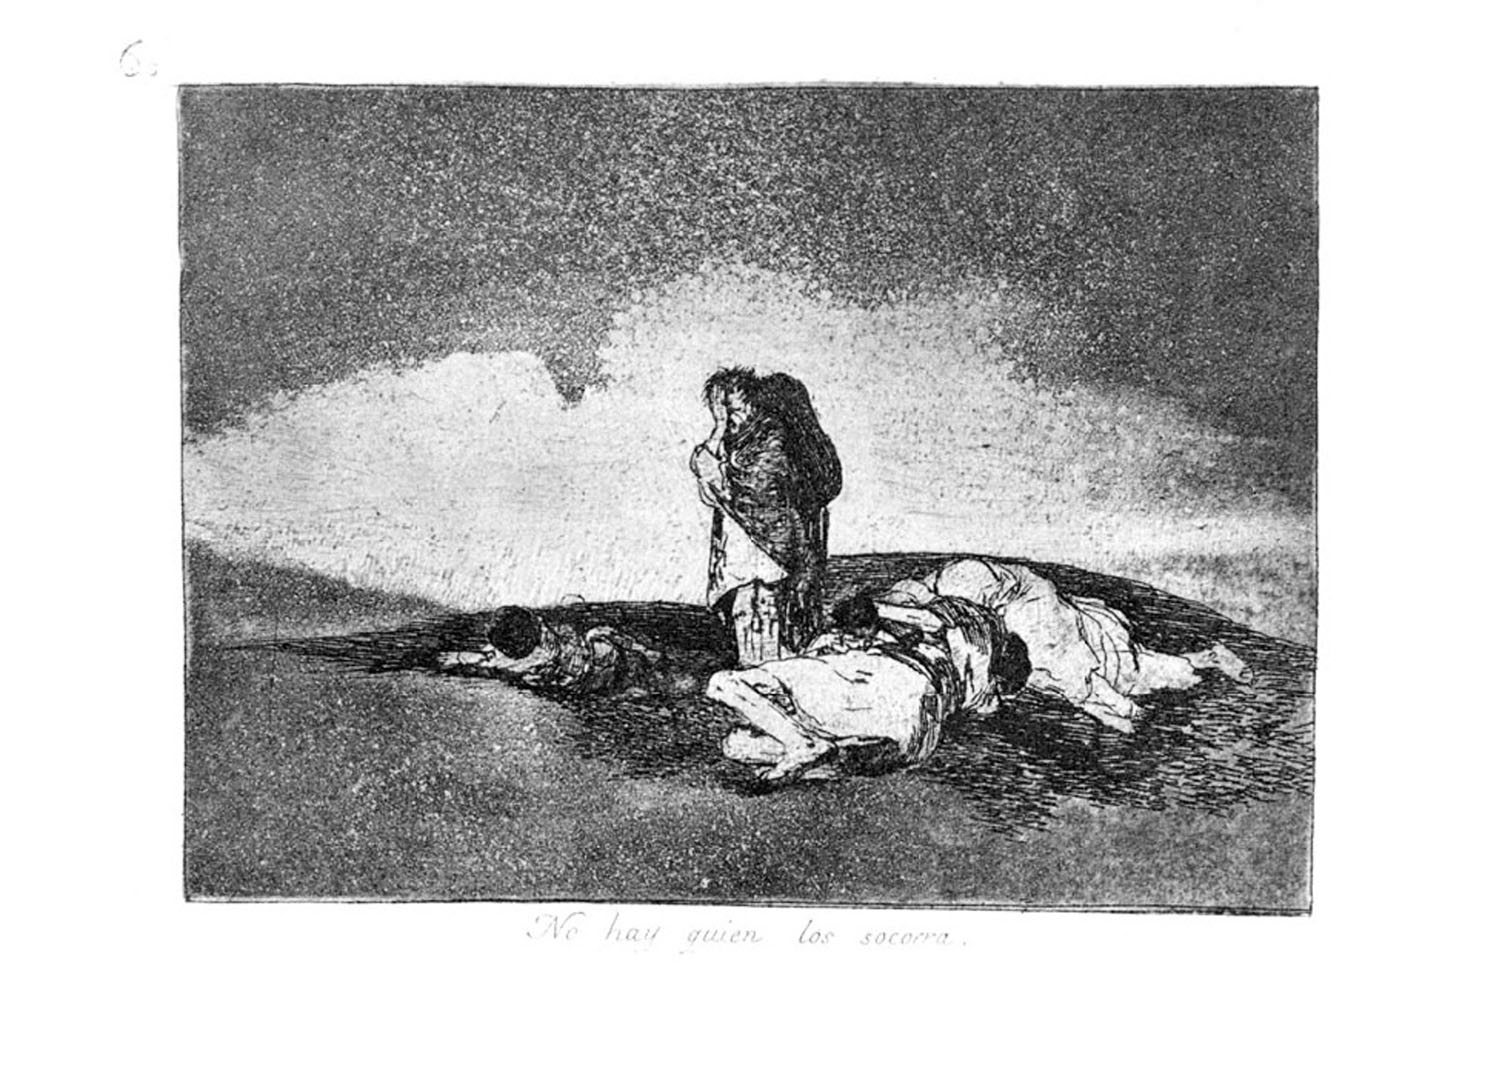  No hay quien los socorra (Los desastres de la guerra, plate No. 60) (1863) de Francisco Goya